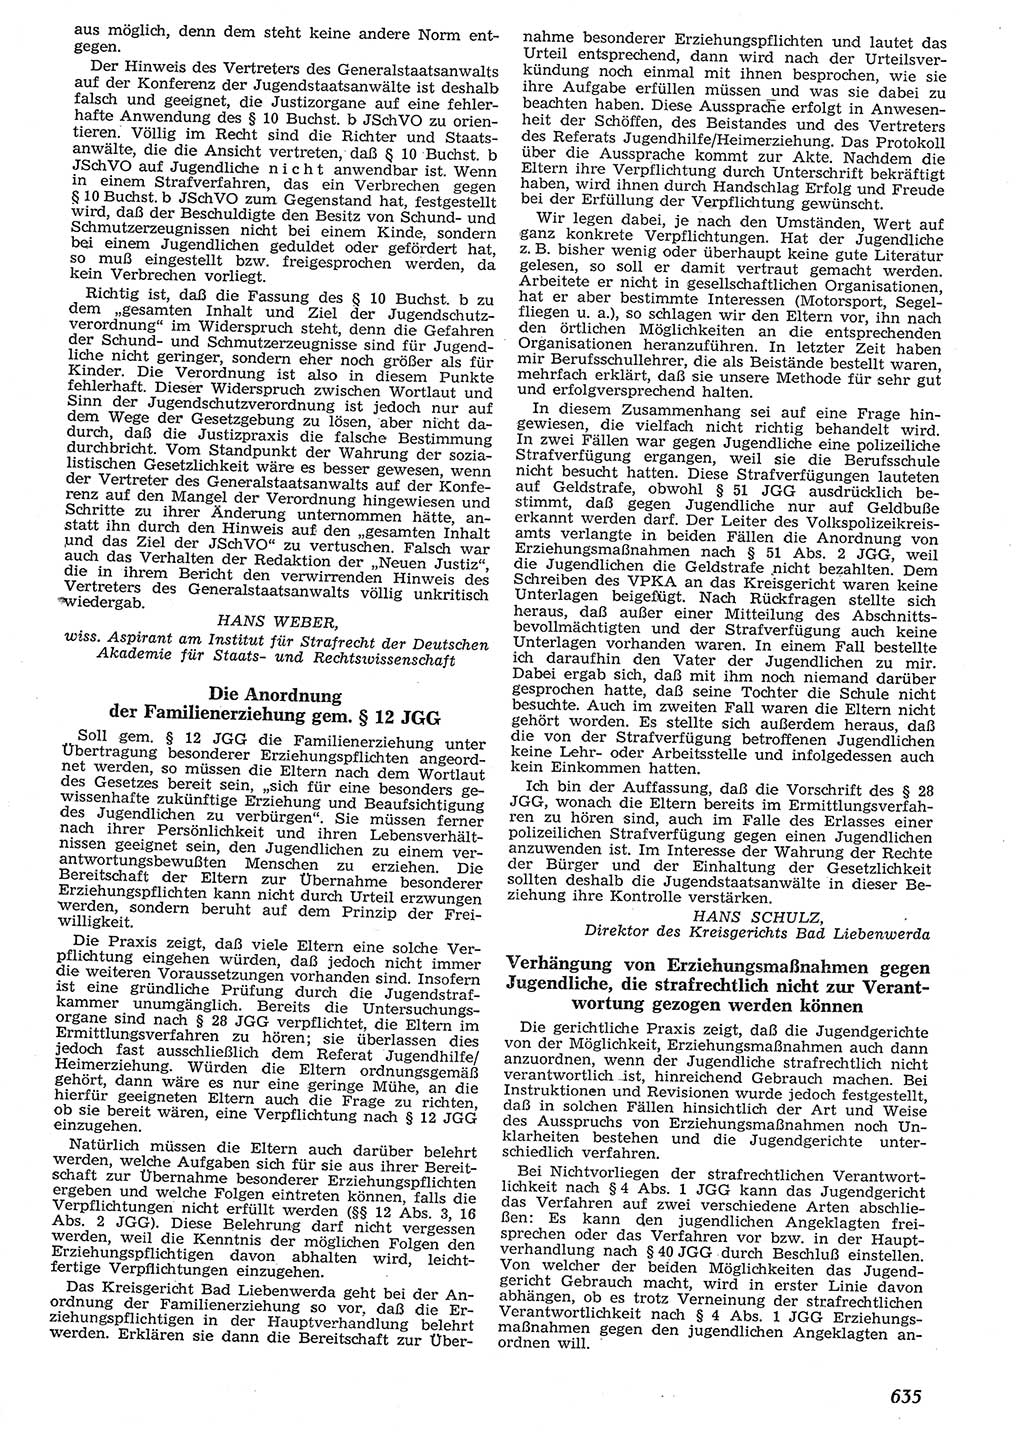 Neue Justiz (NJ), Zeitschrift für Recht und Rechtswissenschaft [Deutsche Demokratische Republik (DDR)], 10. Jahrgang 1956, Seite 635 (NJ DDR 1956, S. 635)